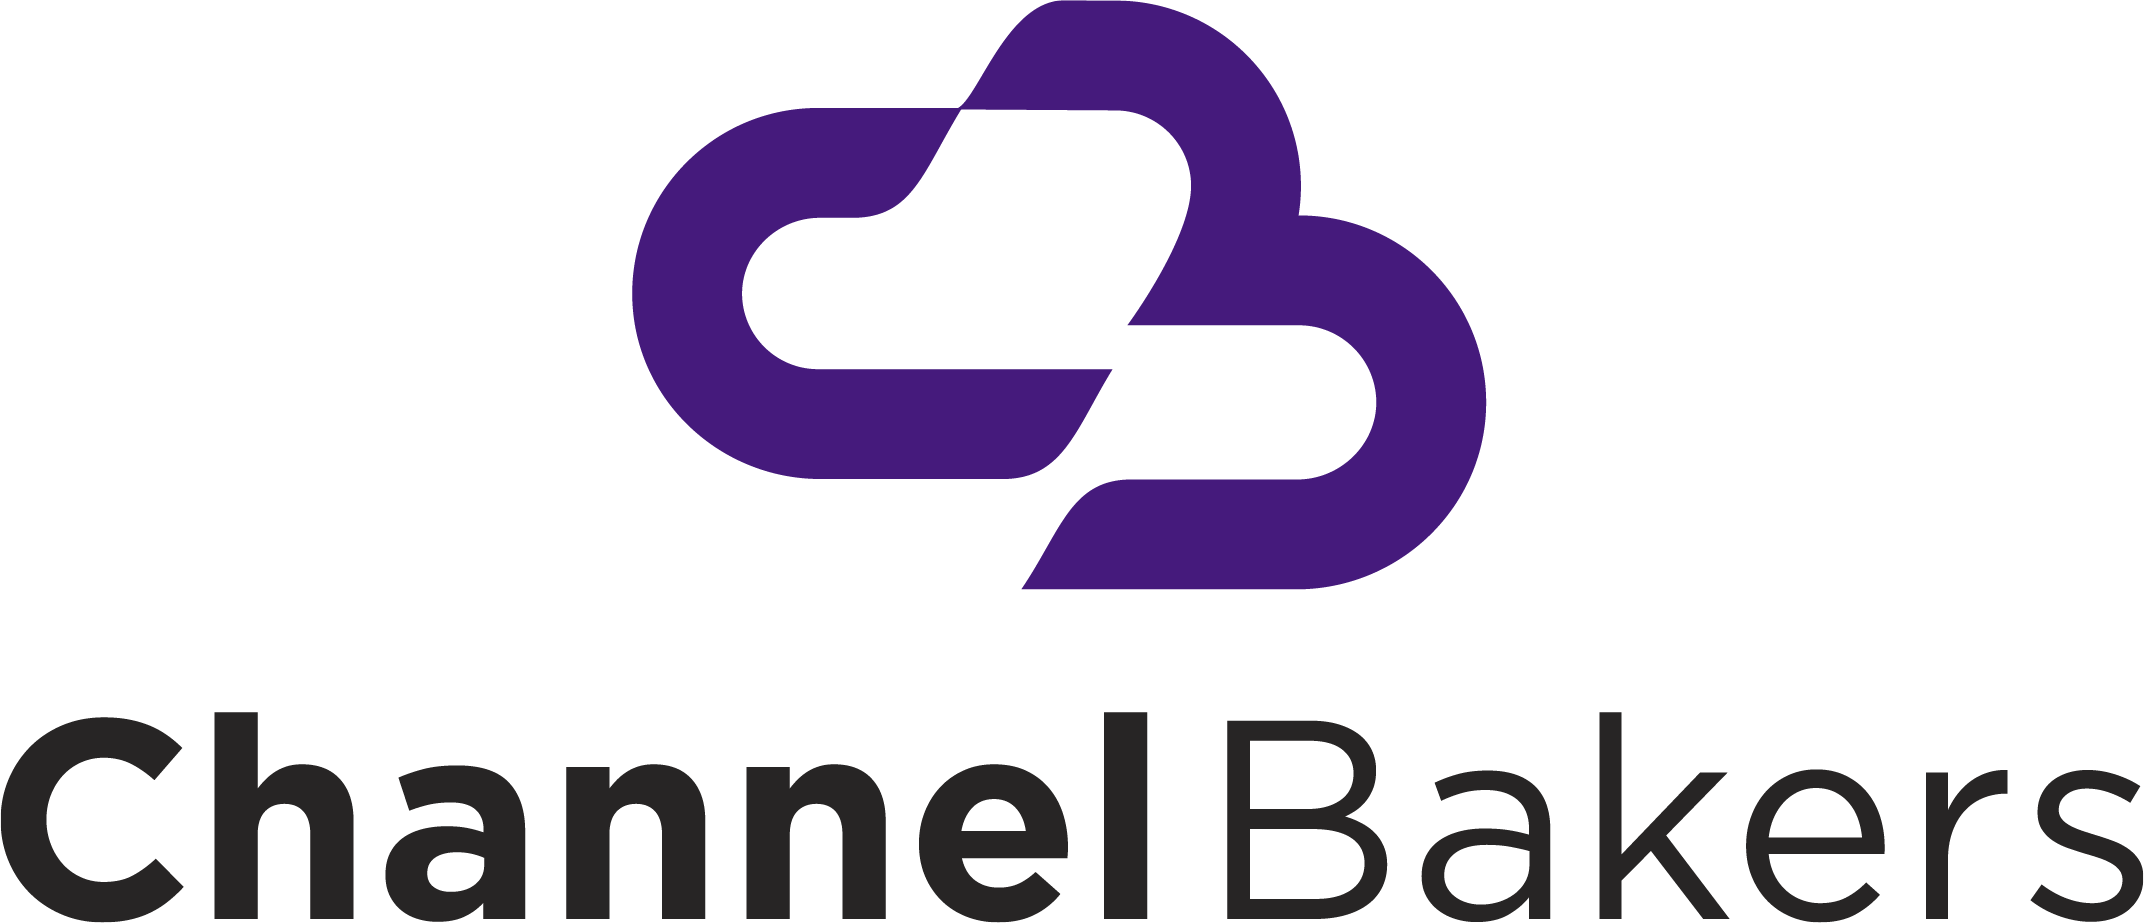 Channel Bakers logo